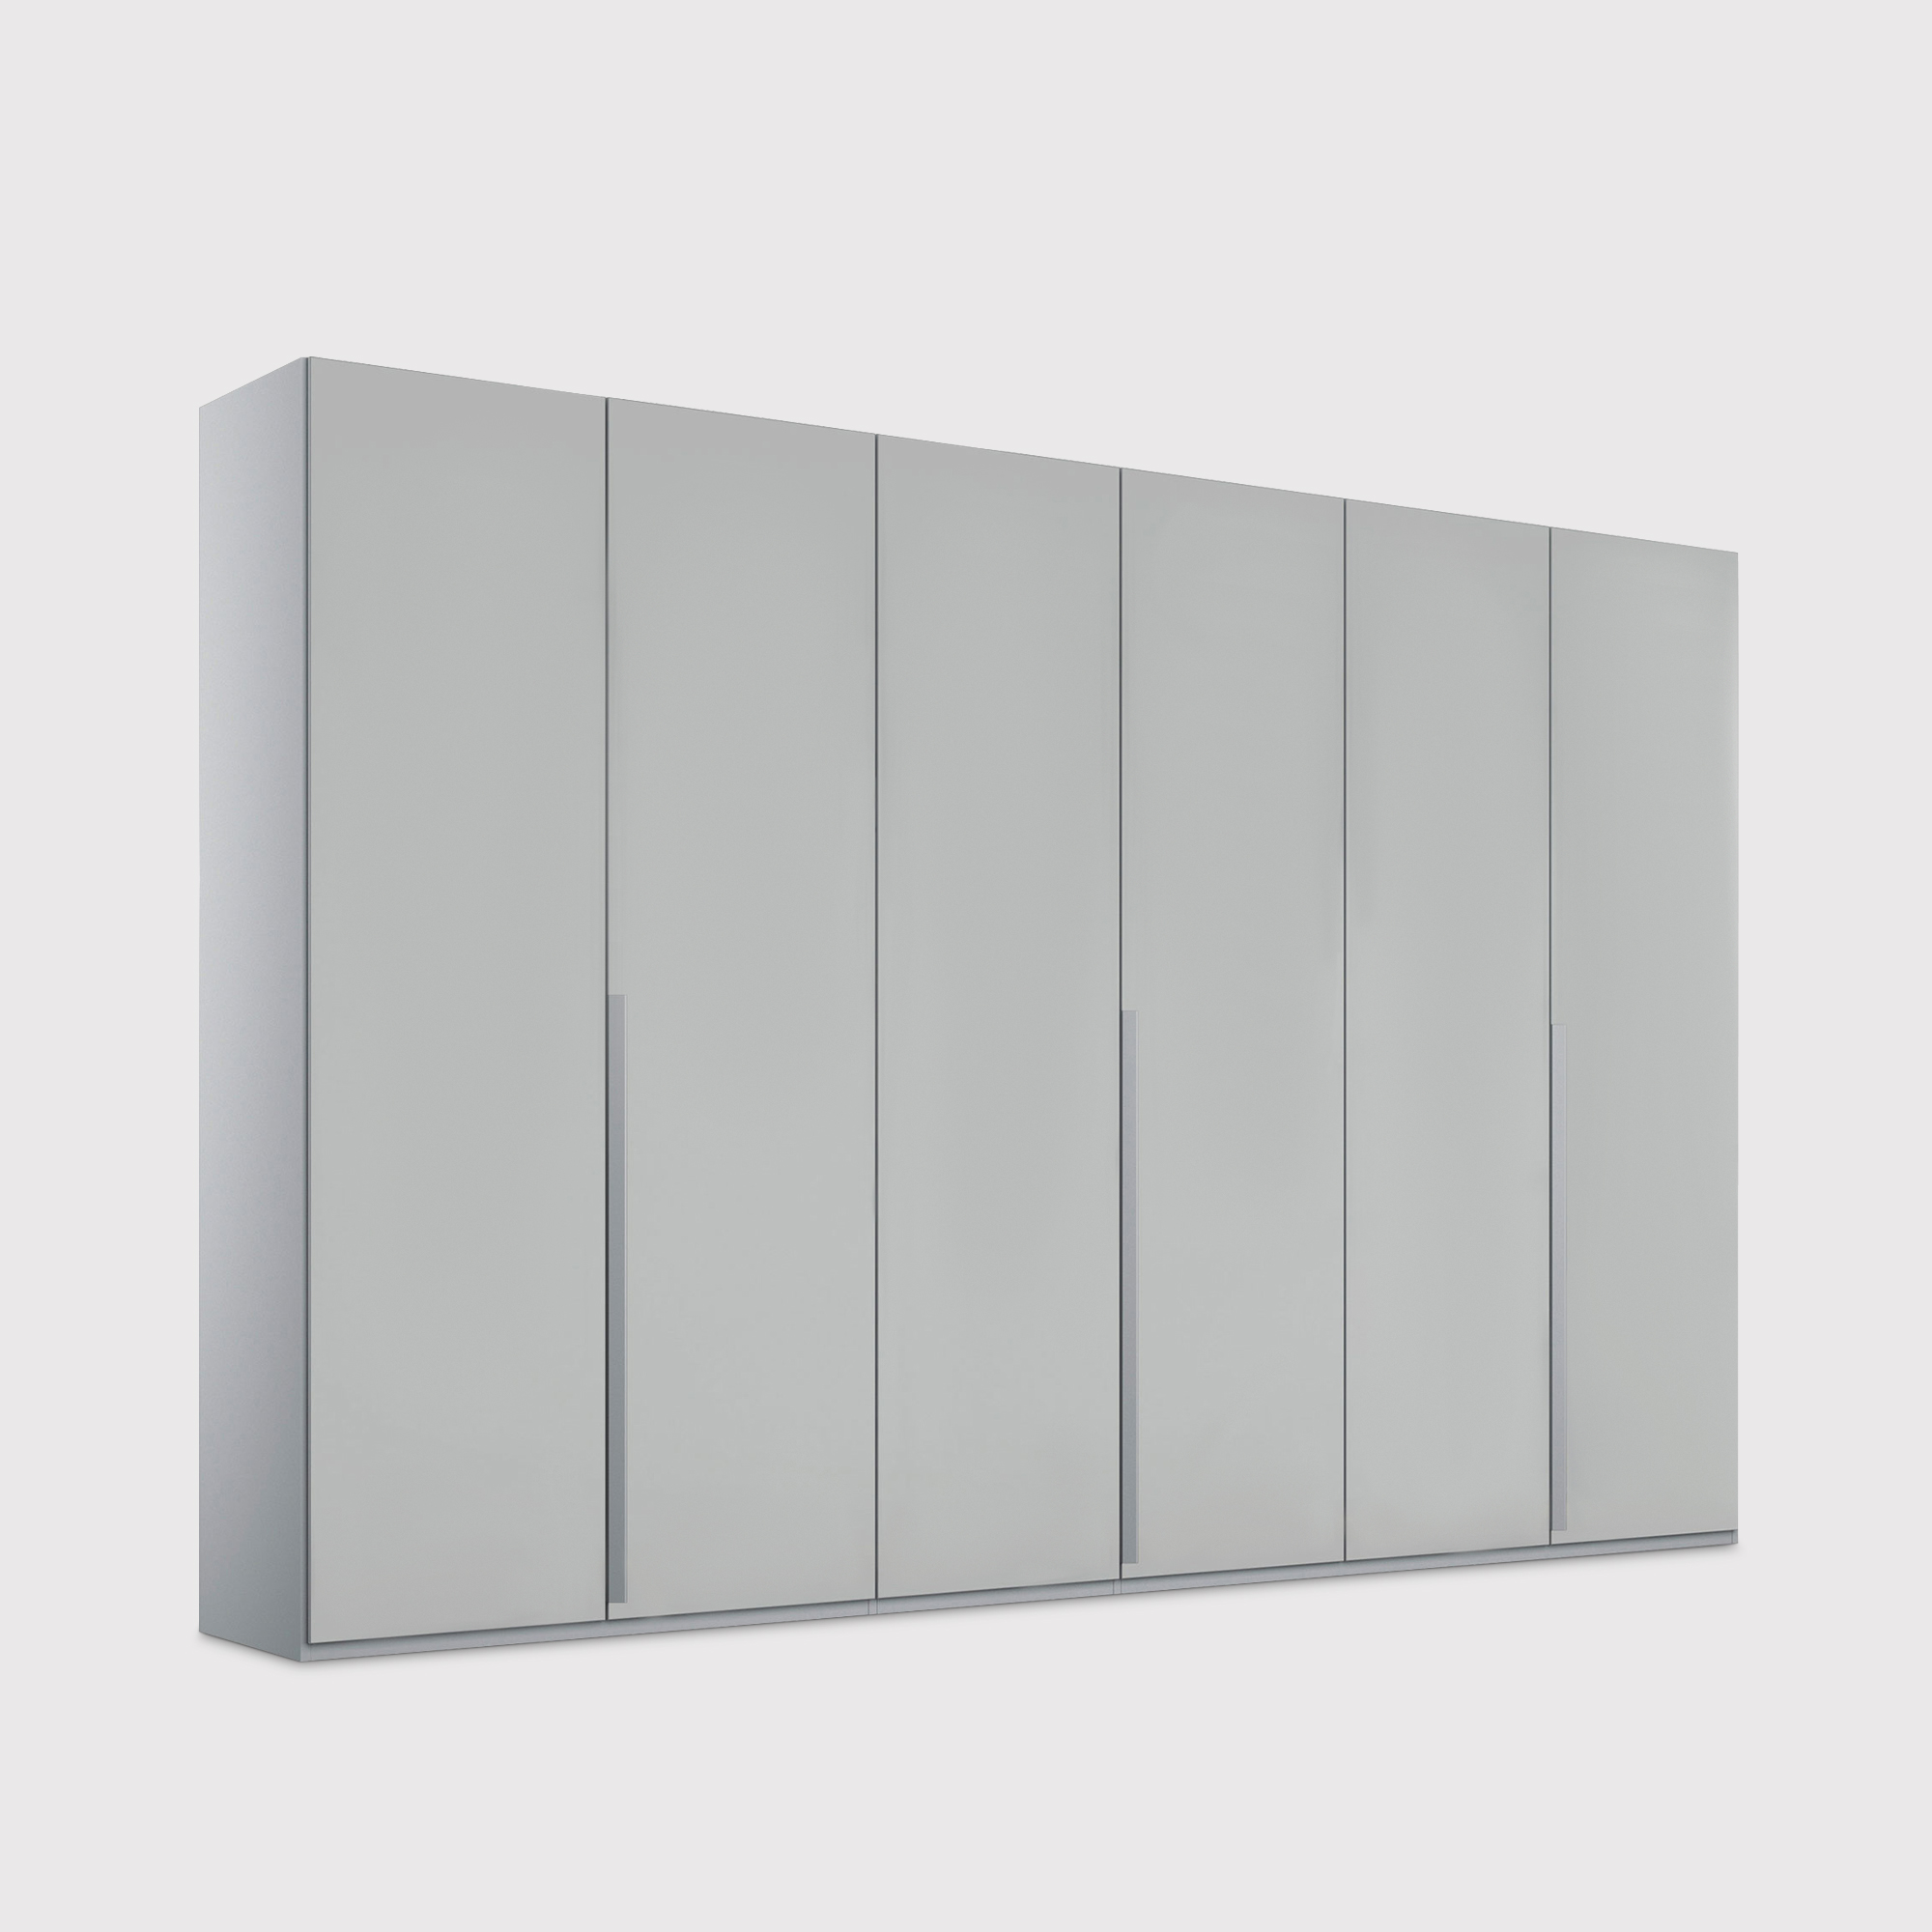 Frans 6 Door Wardrobe 301cm, Grey | Barker & Stonehouse